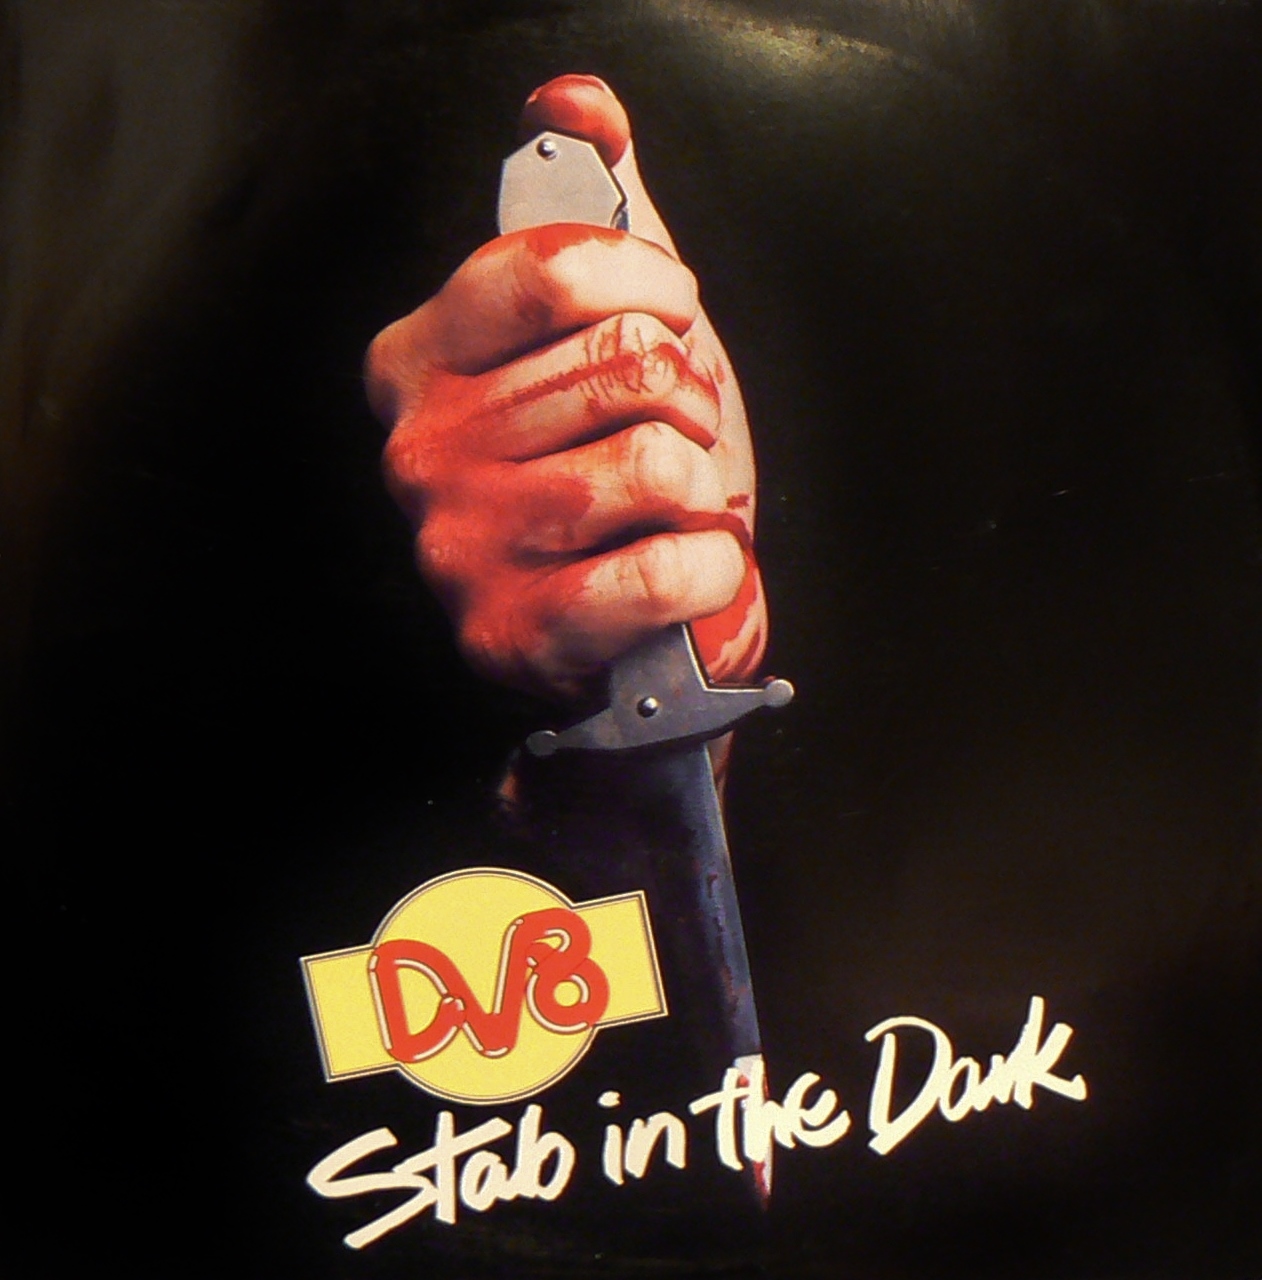 Dv8 stab in the dark